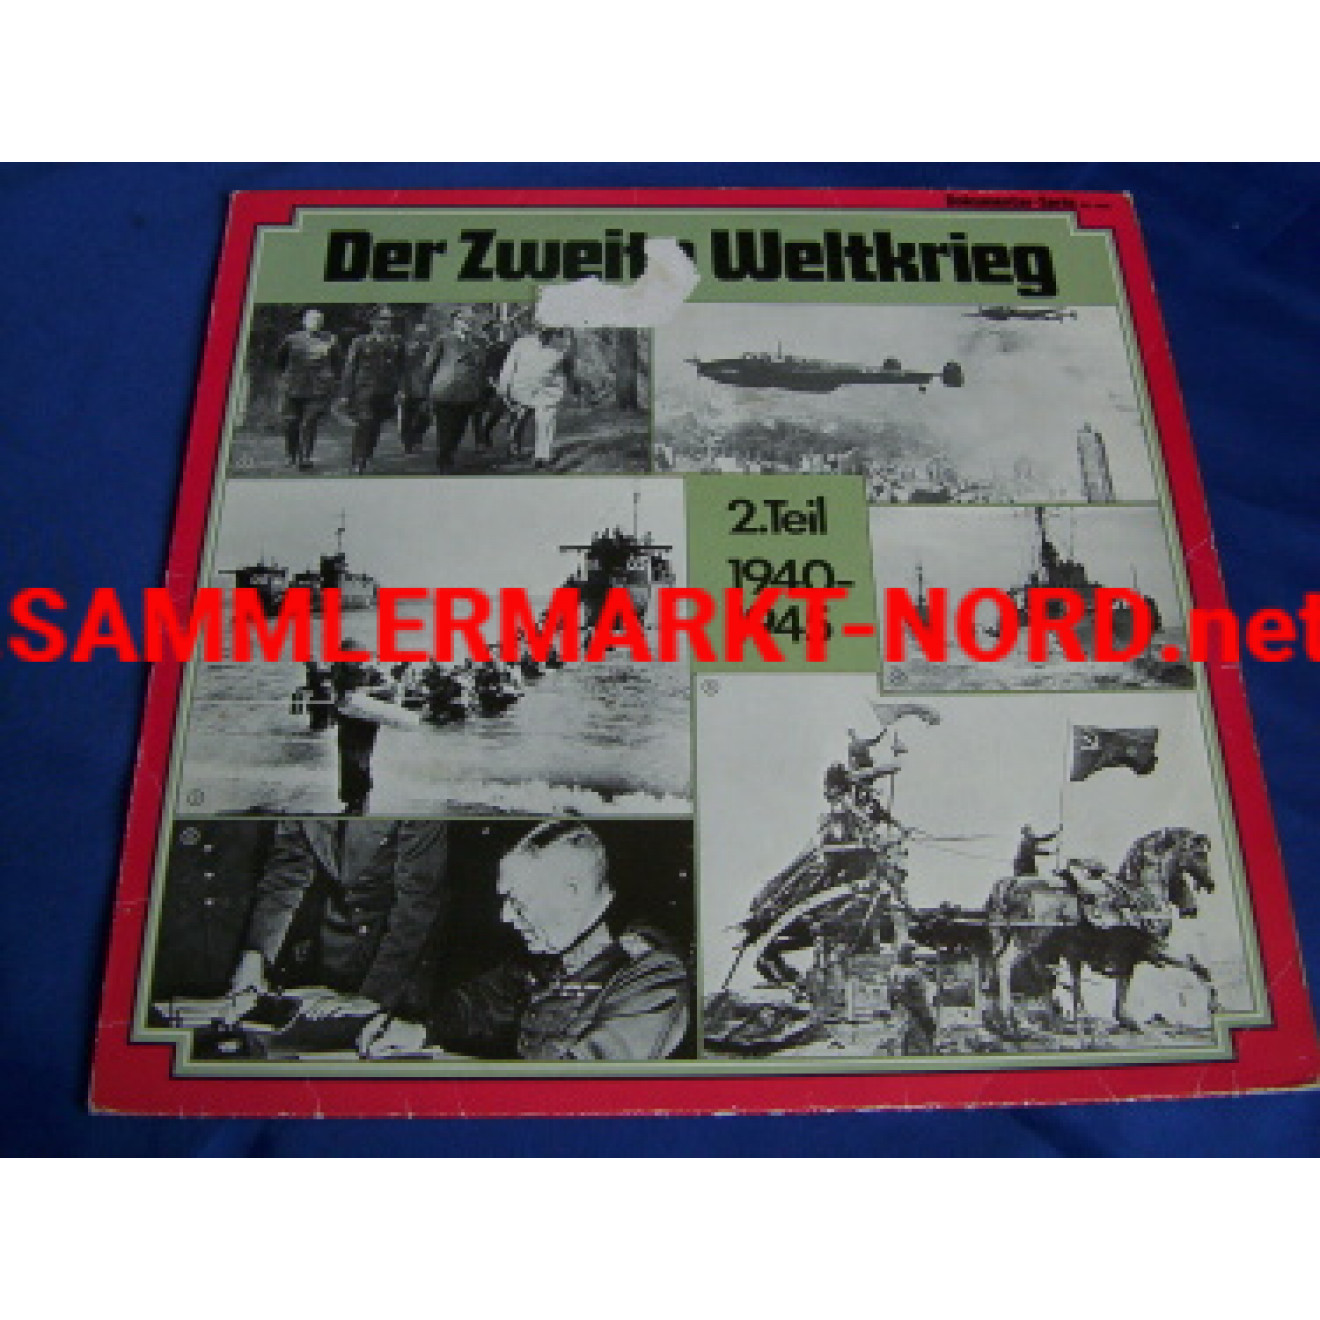 Dokumentationsschallplatte "Der zweite Weltkrieg - Teil 2 1940-1